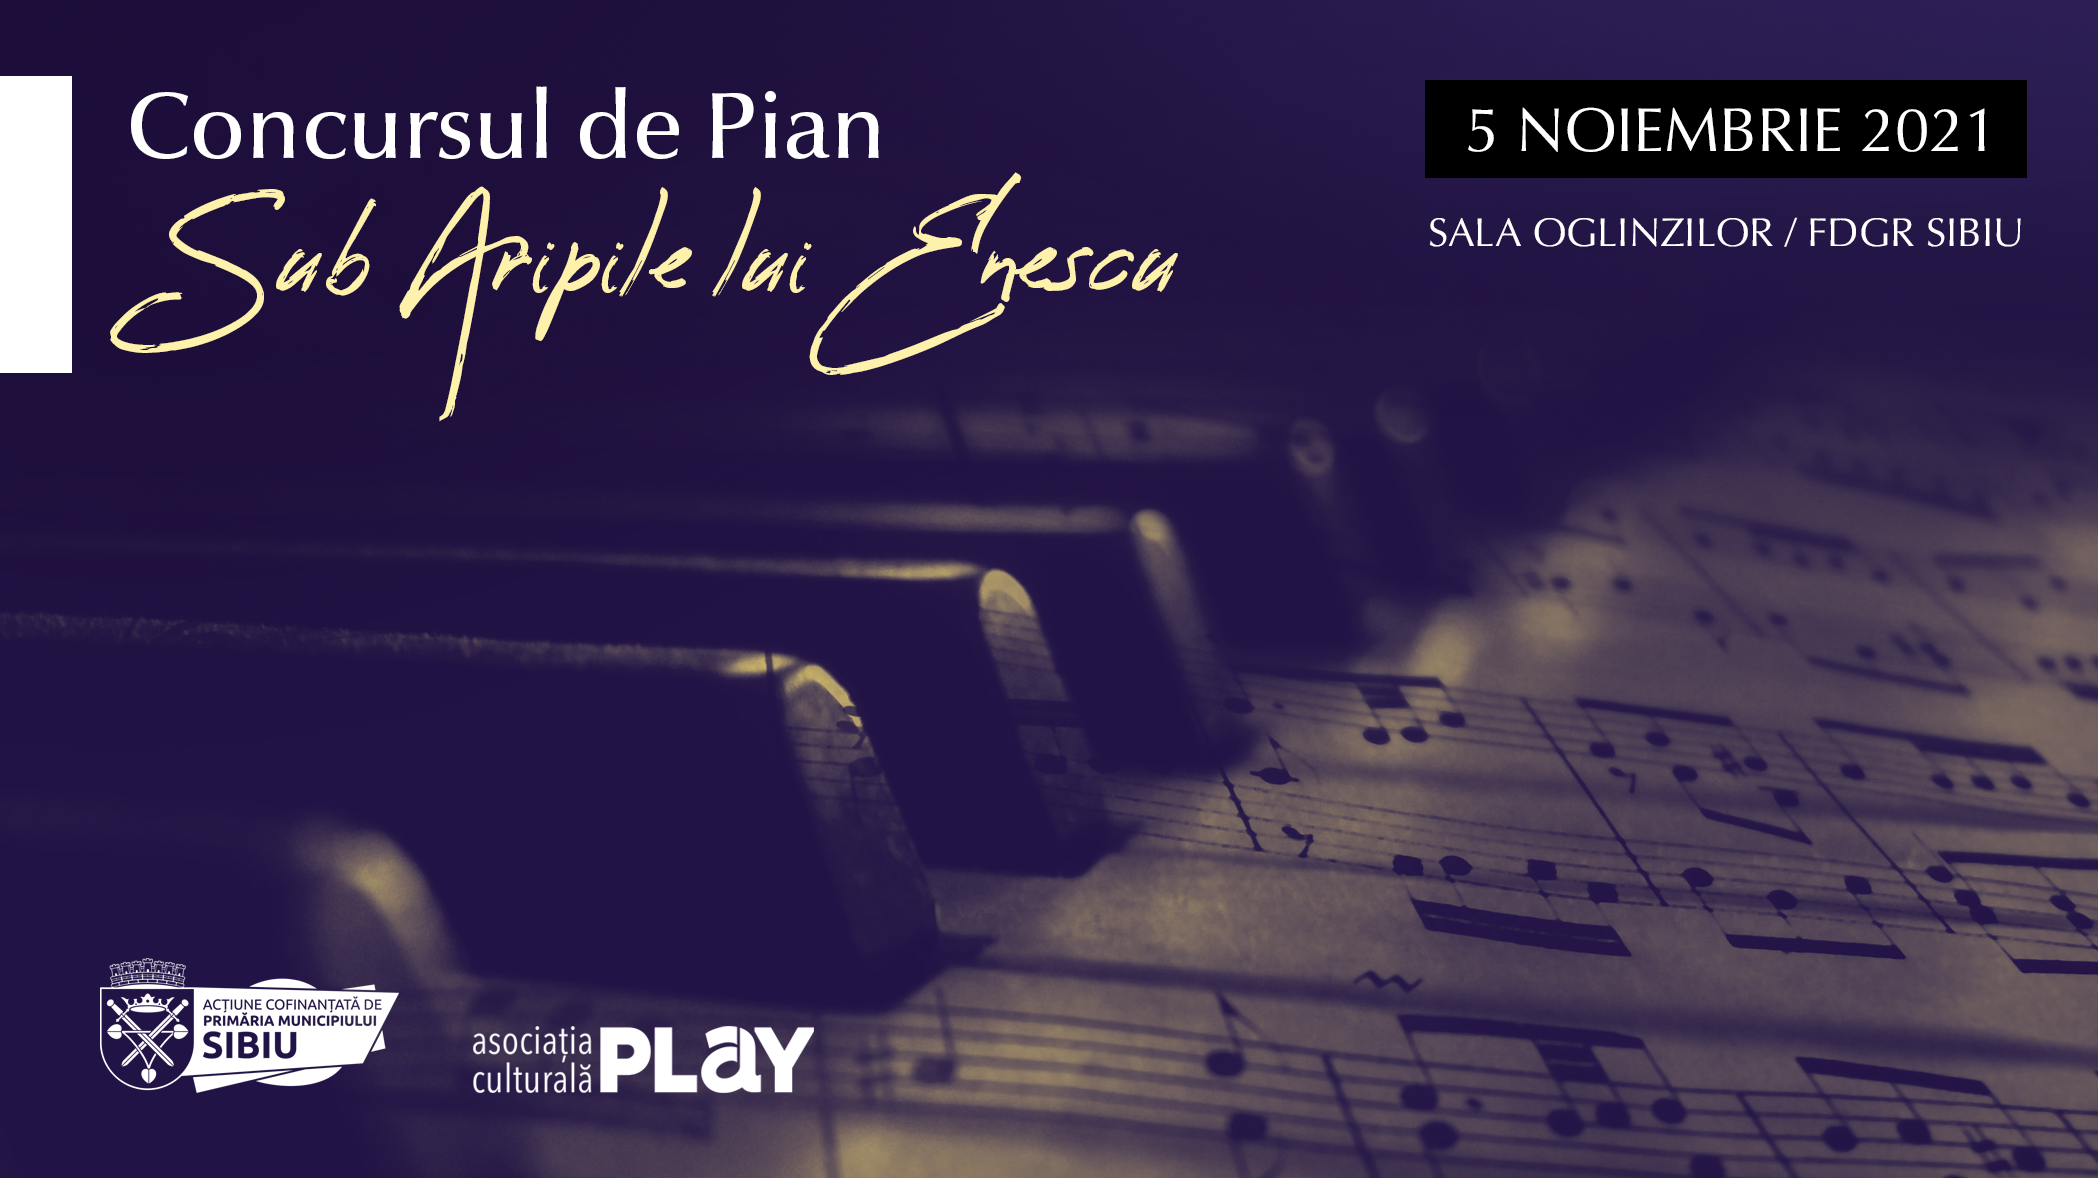 Concursul de pian „Sub aripile lui Enescu”